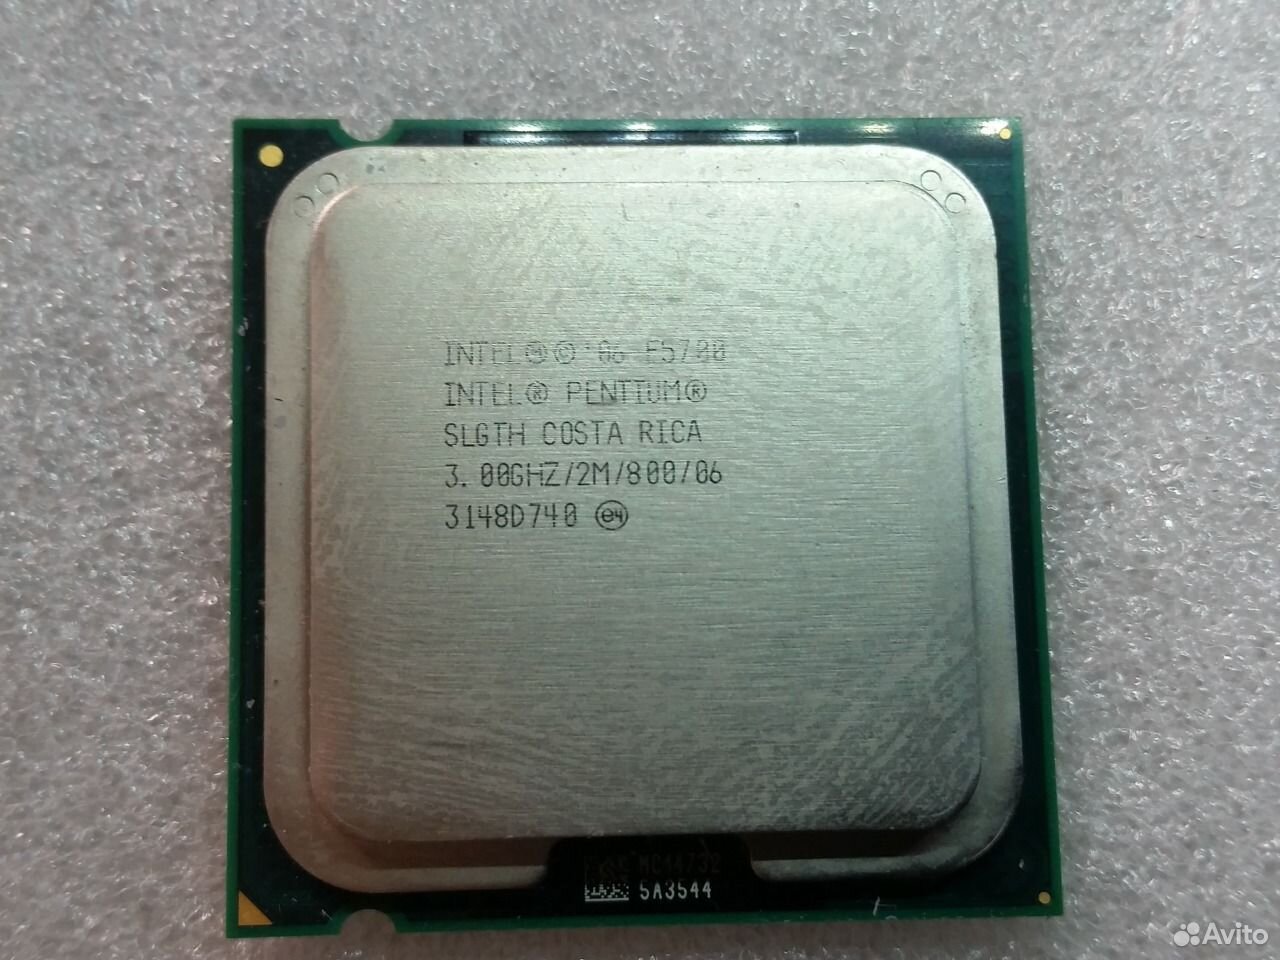 Pentium r 3.00 ghz. Intel Pentium e5700. Intel Pentium e5700 3.00GHZ. Intel Pentium e2200 Conroe lga775, 2 x 2200 МГЦ. Intel Core 2 Duo e6550 Conroe lga775, 2 x 2333 МГЦ.